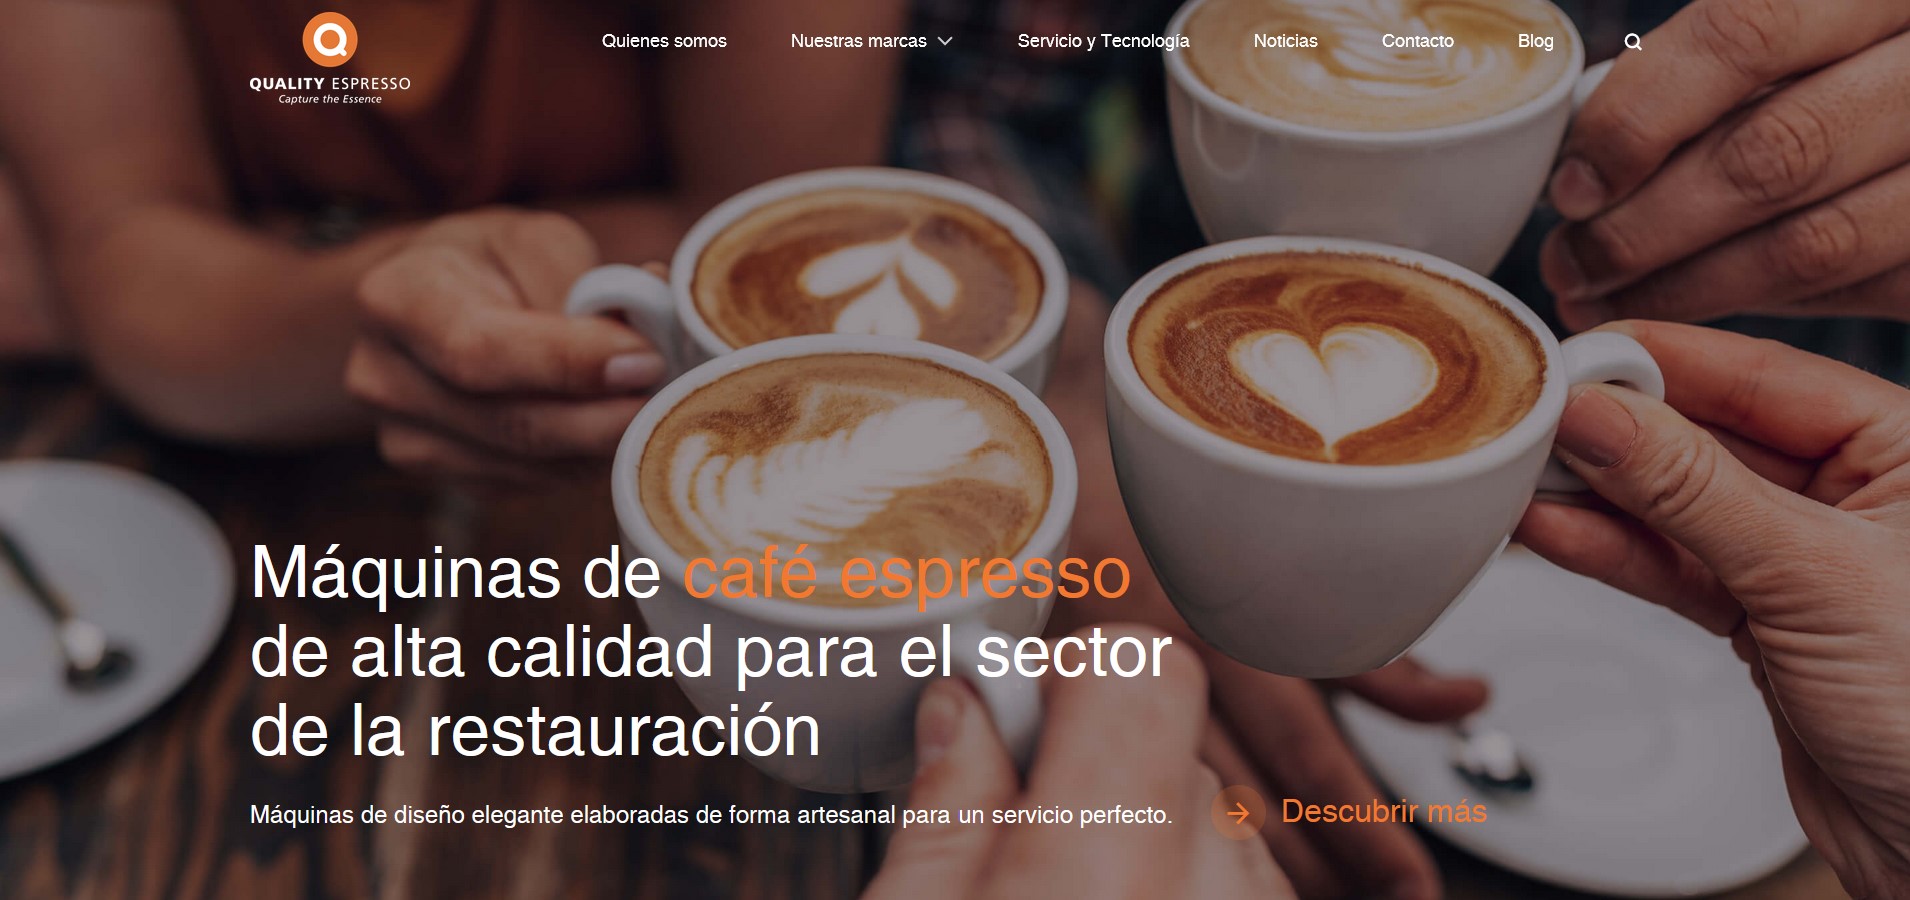 Quality Espresso lanza su nueva web corporativa completamente renovada, atractiva y fácil de usar